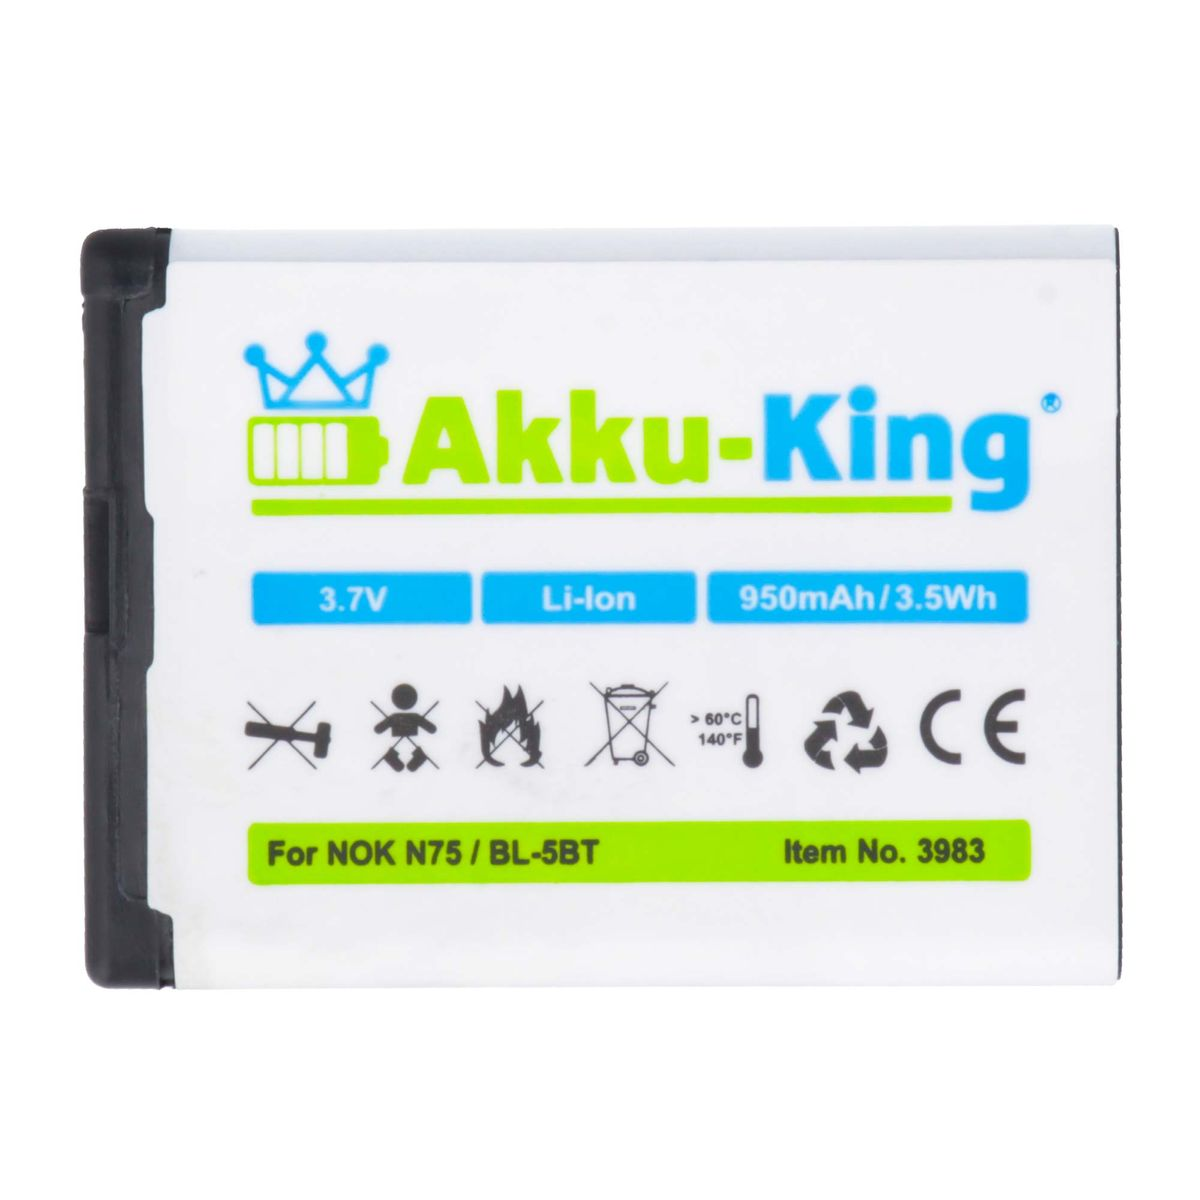 AKKU-KING Akku Handy-Akku, 3.7 Volt, kompatibel mit Li-Ion Nokia 950mAh BL-5BT